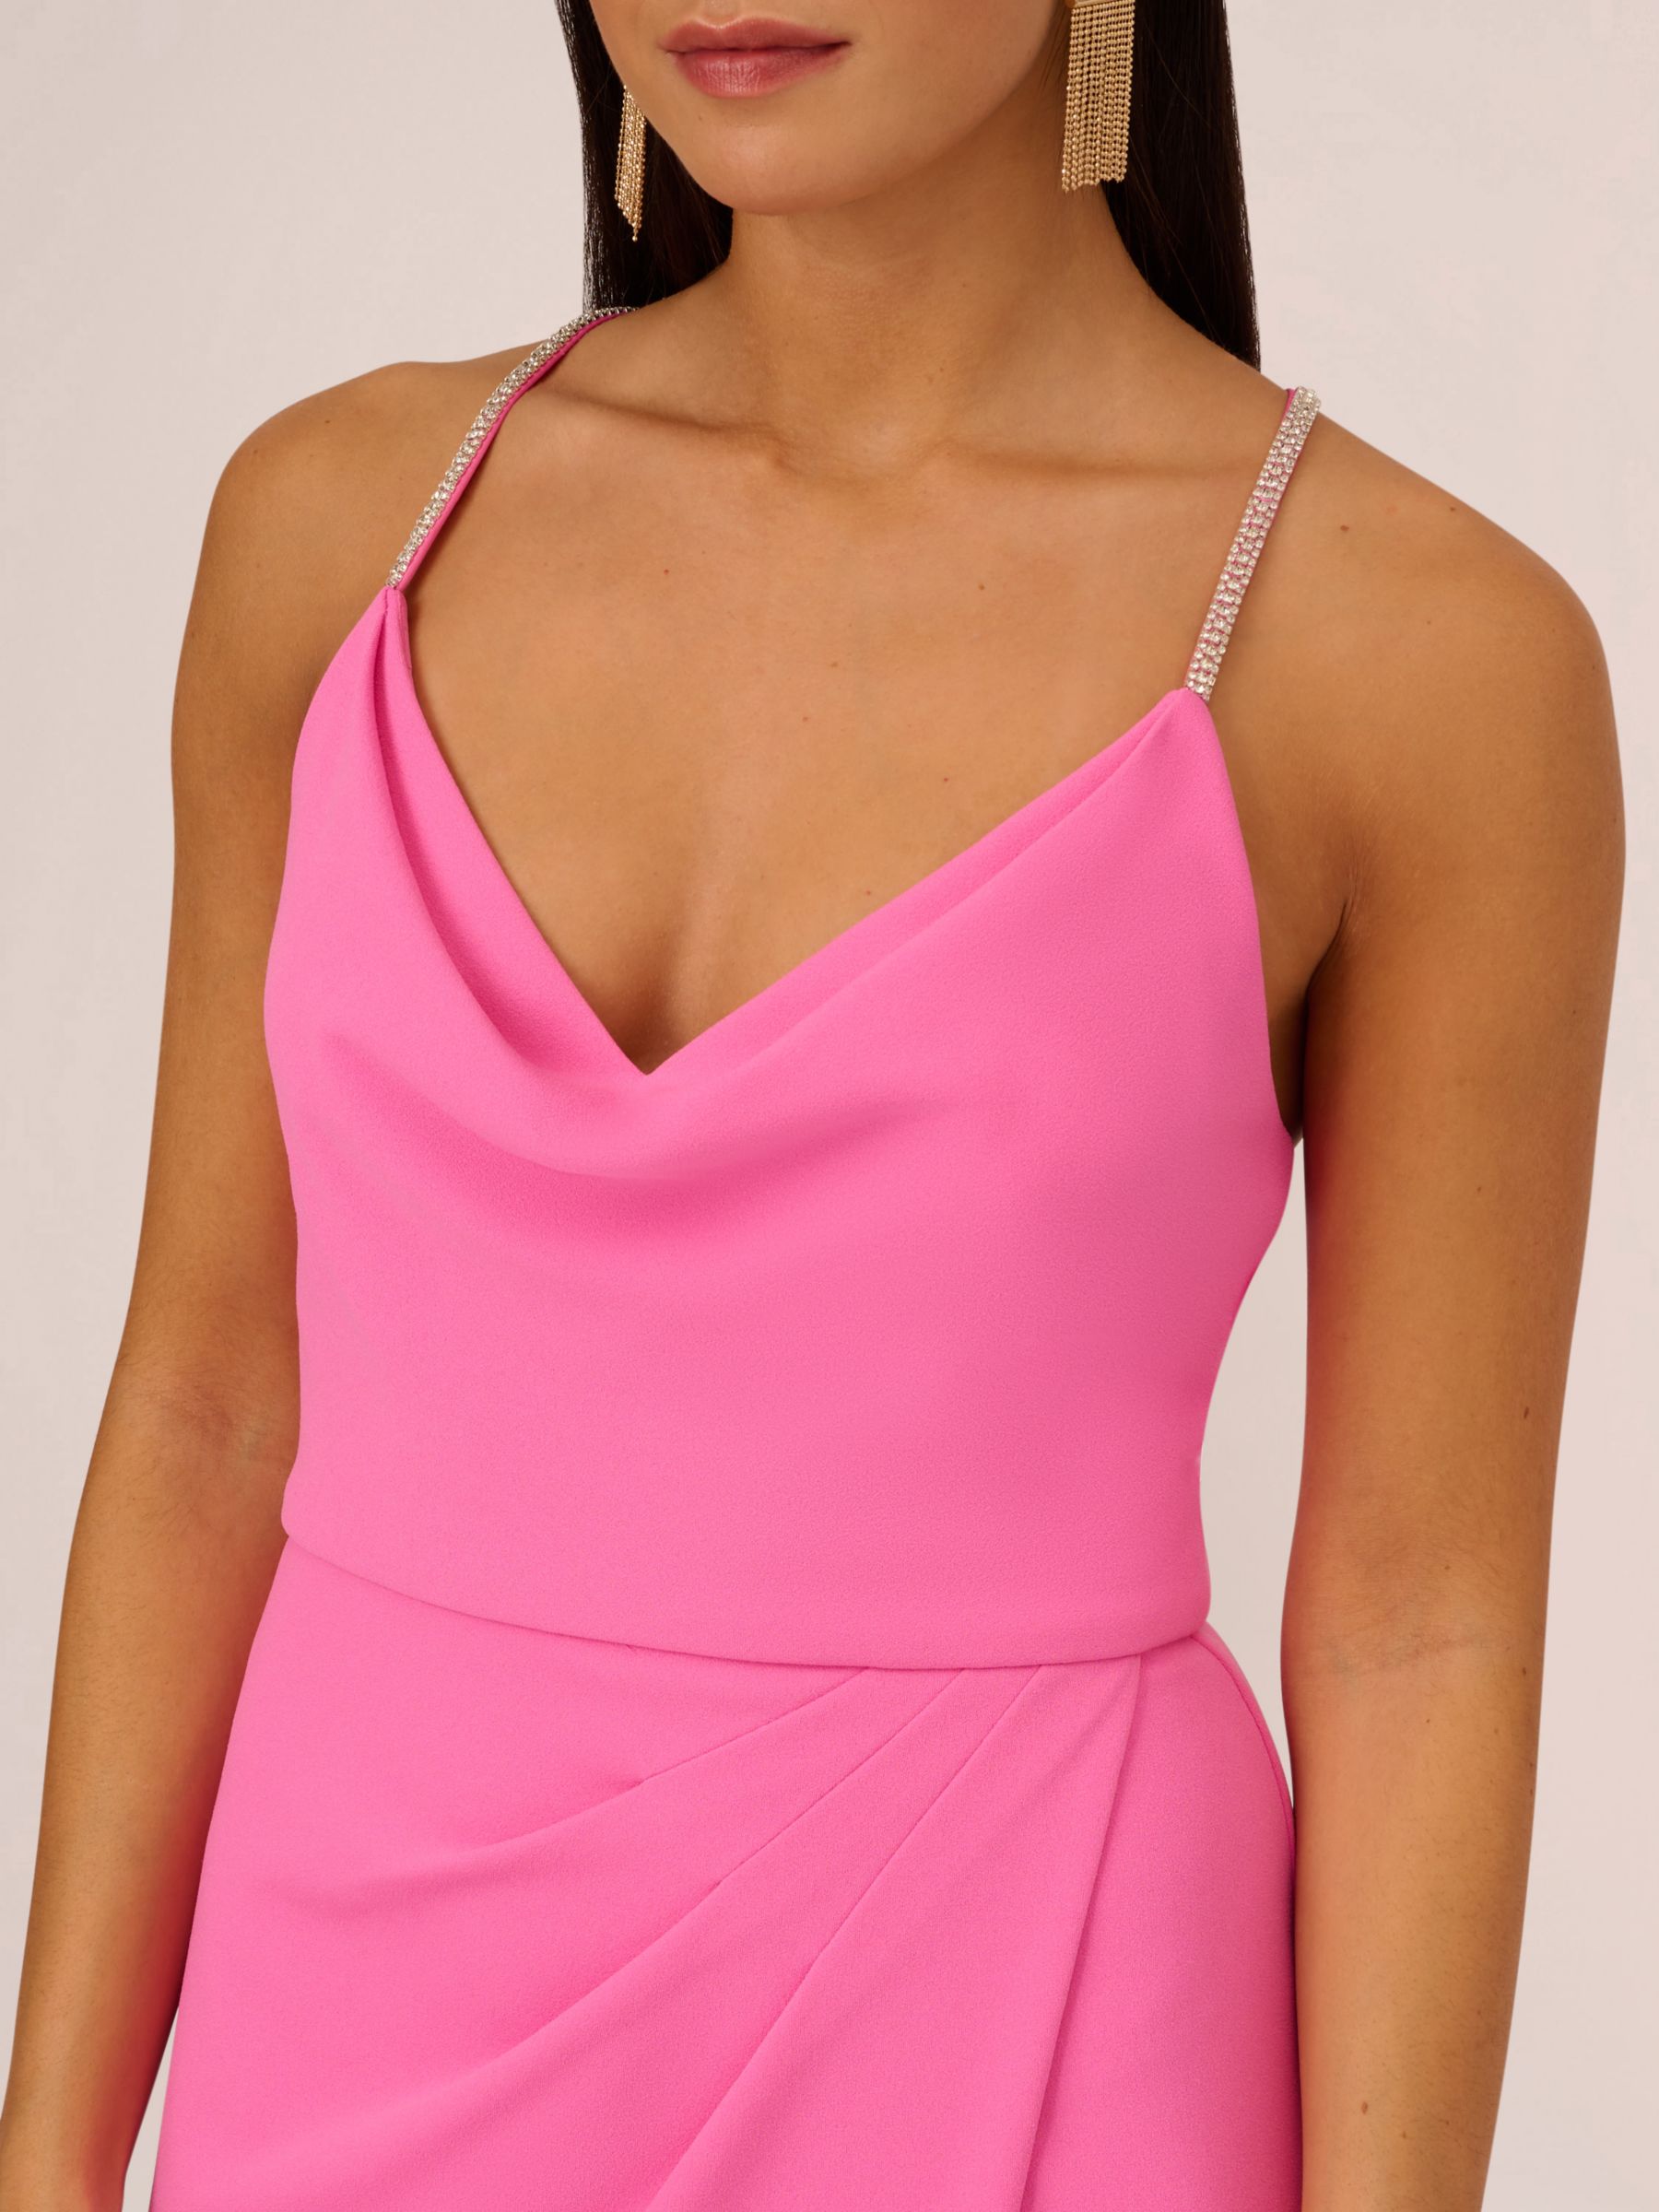 Aidan Mattox by Adrianna Papell Cowl Neck Column Maxi Dress, Pink Parfait, 6